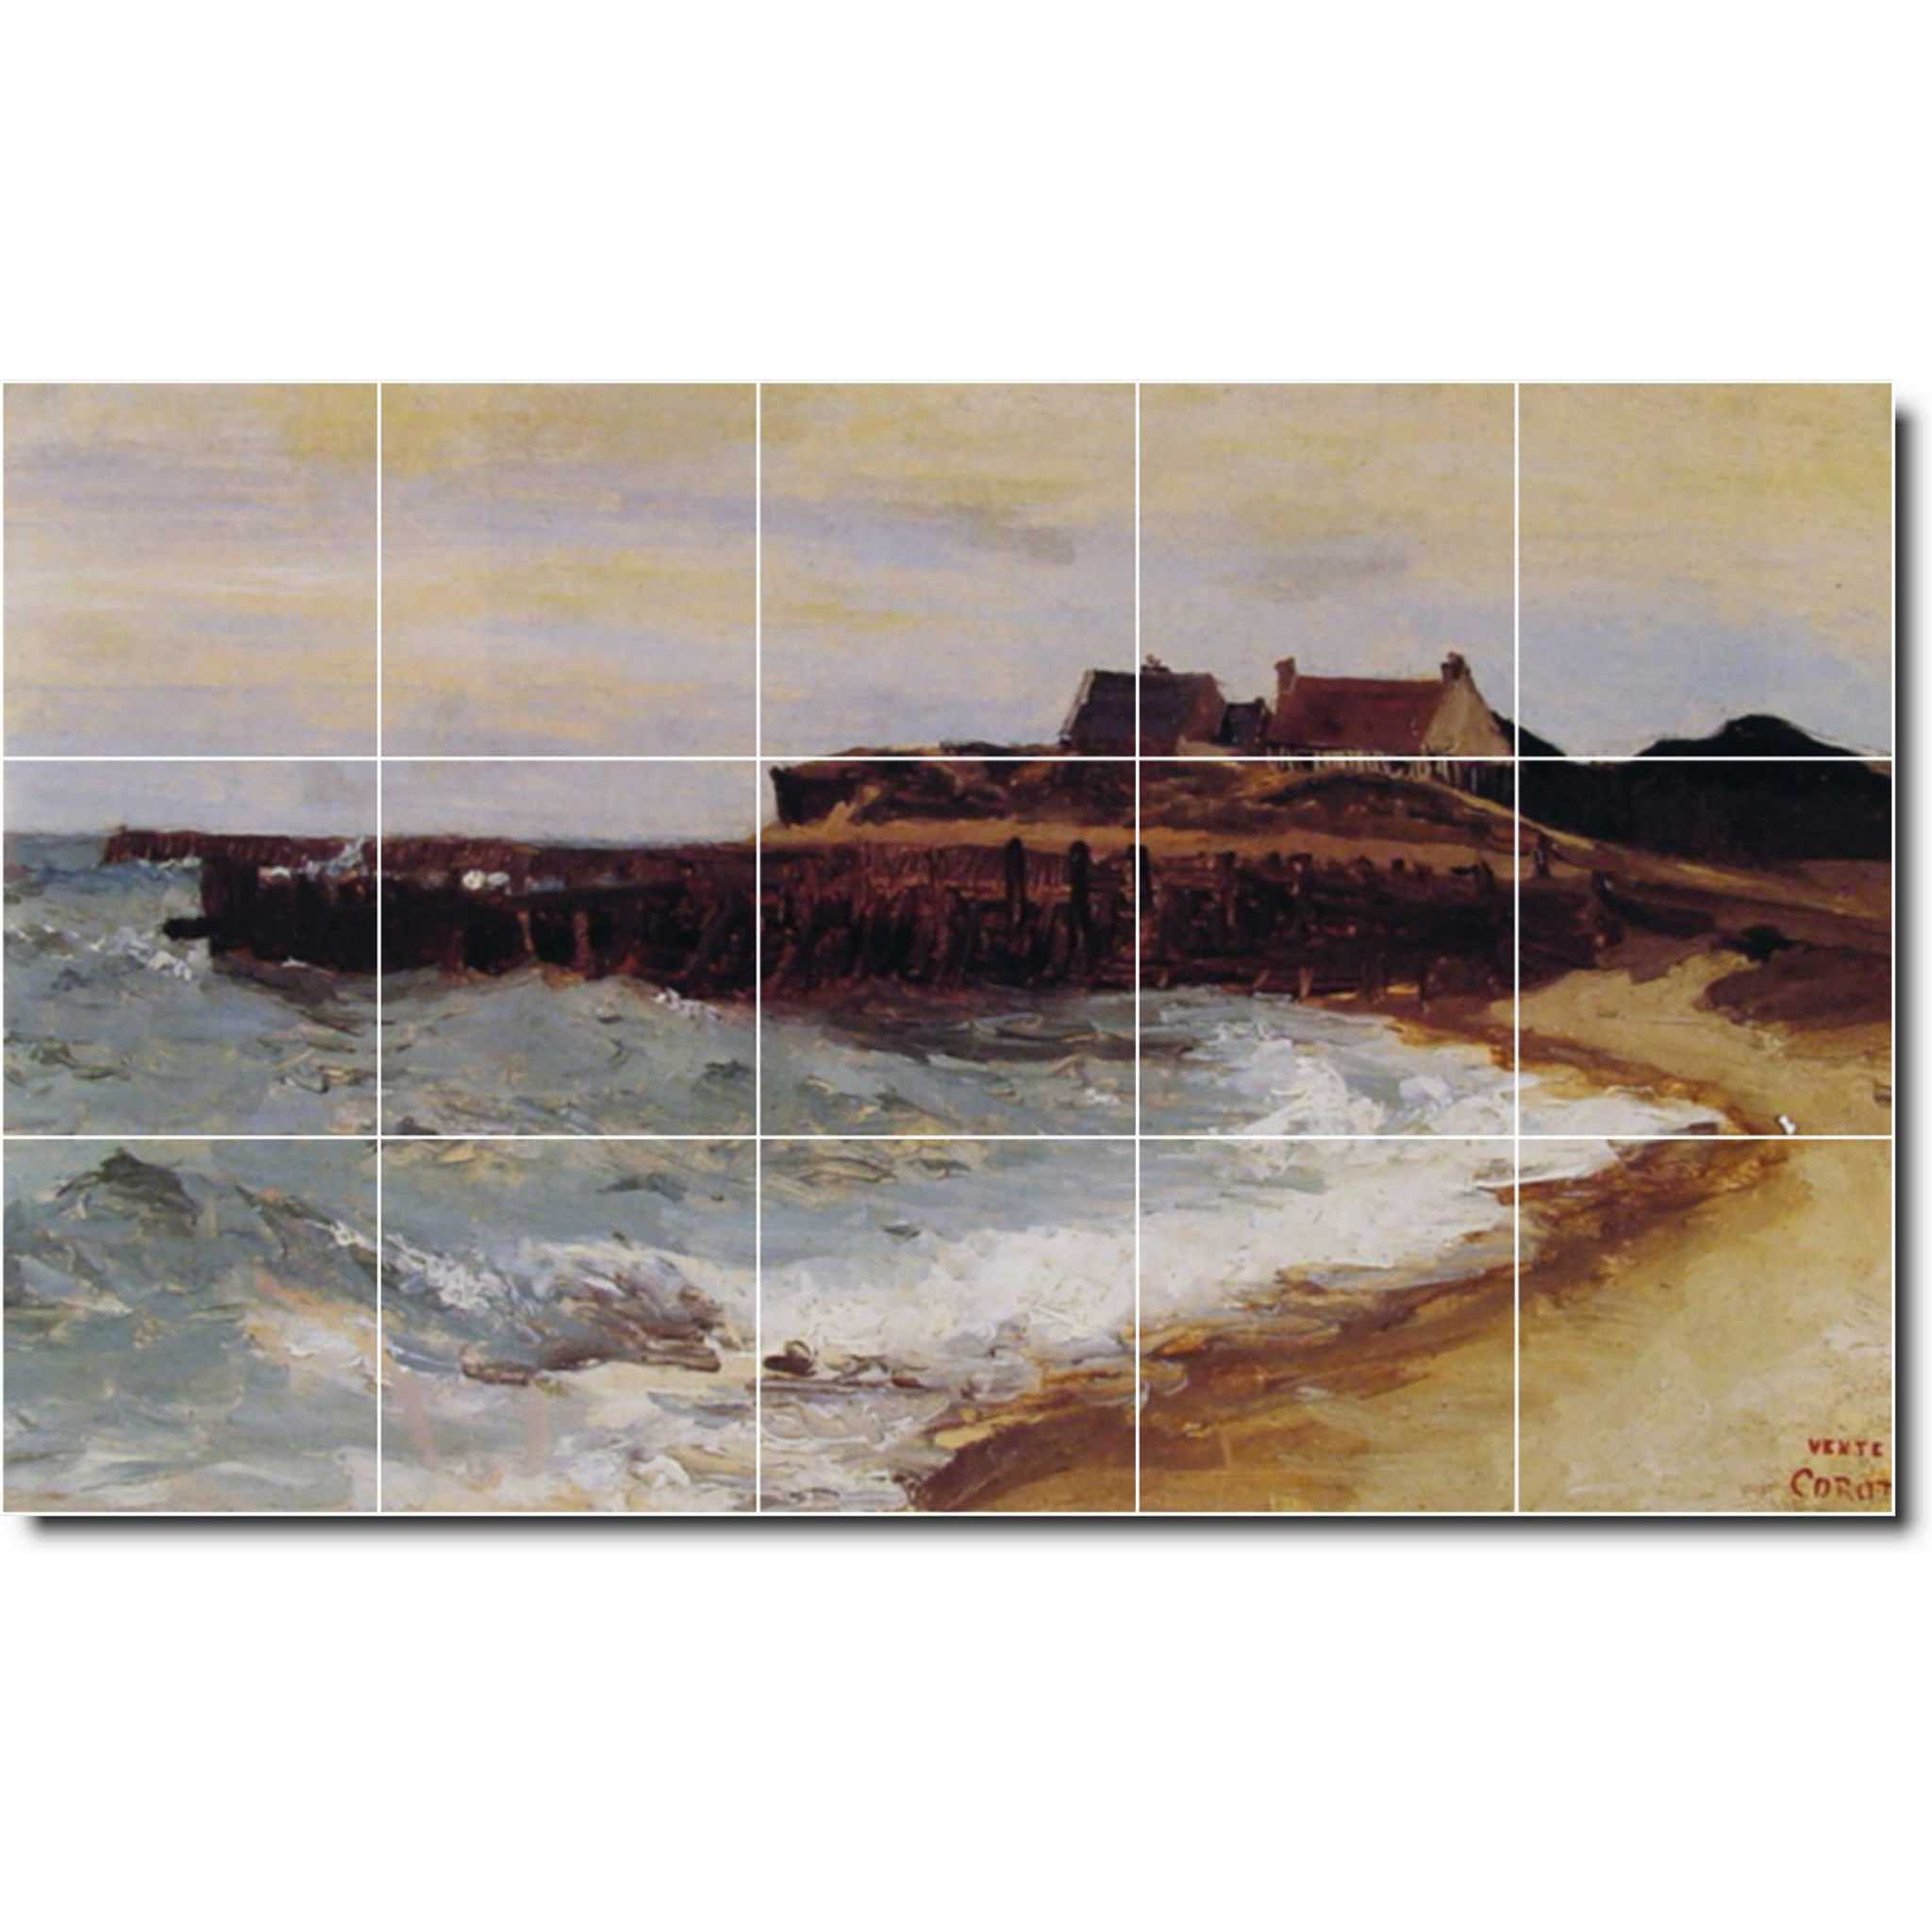 jean corot waterfront painting ceramic tile mural p02065